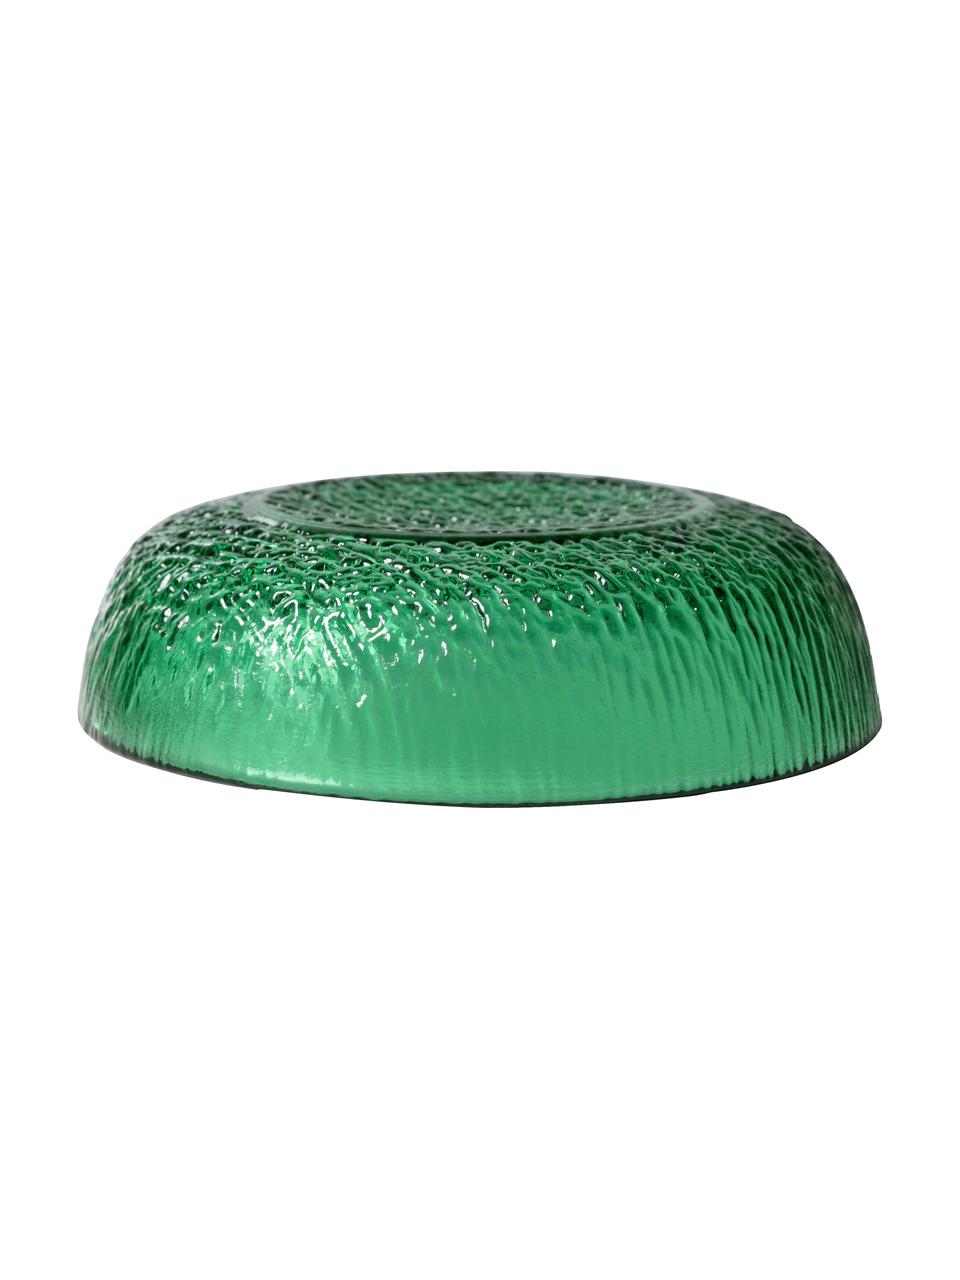 Dipschälchen The Emeralds aus Glas, 2 Stück, Glas, Grün, Ø 13